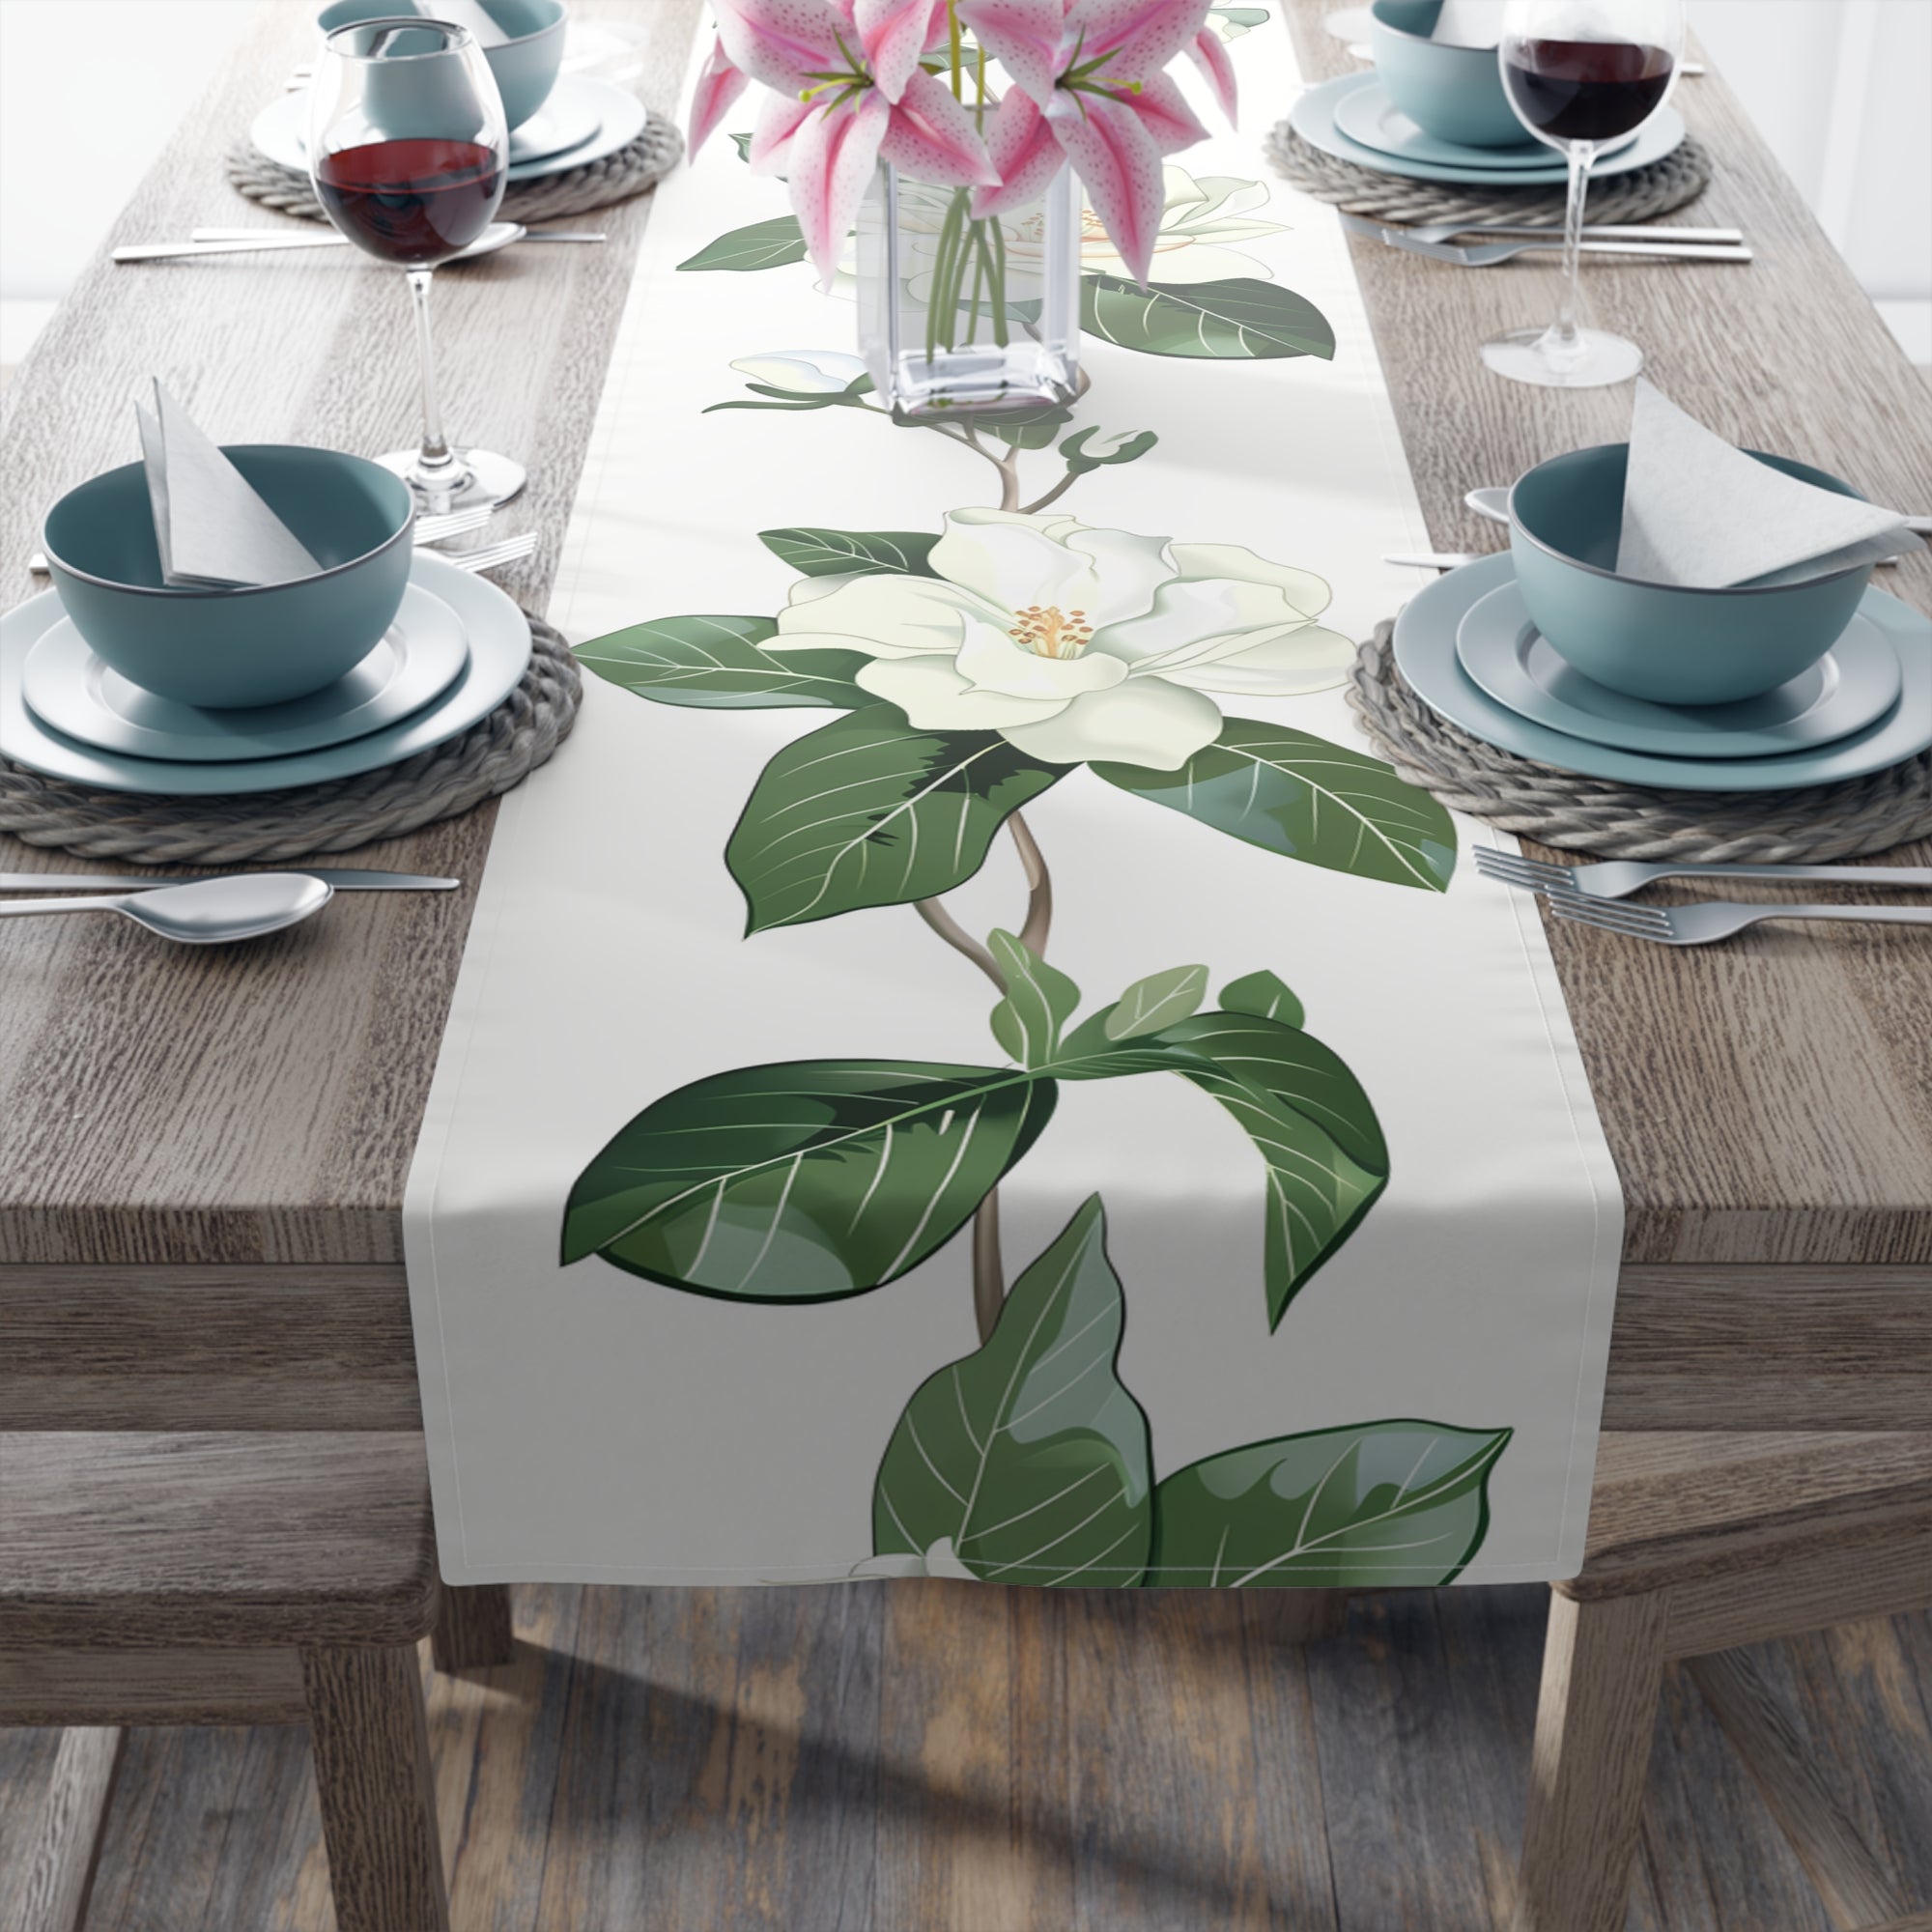 Table Runner with White Gardenia Design (16" × 72")